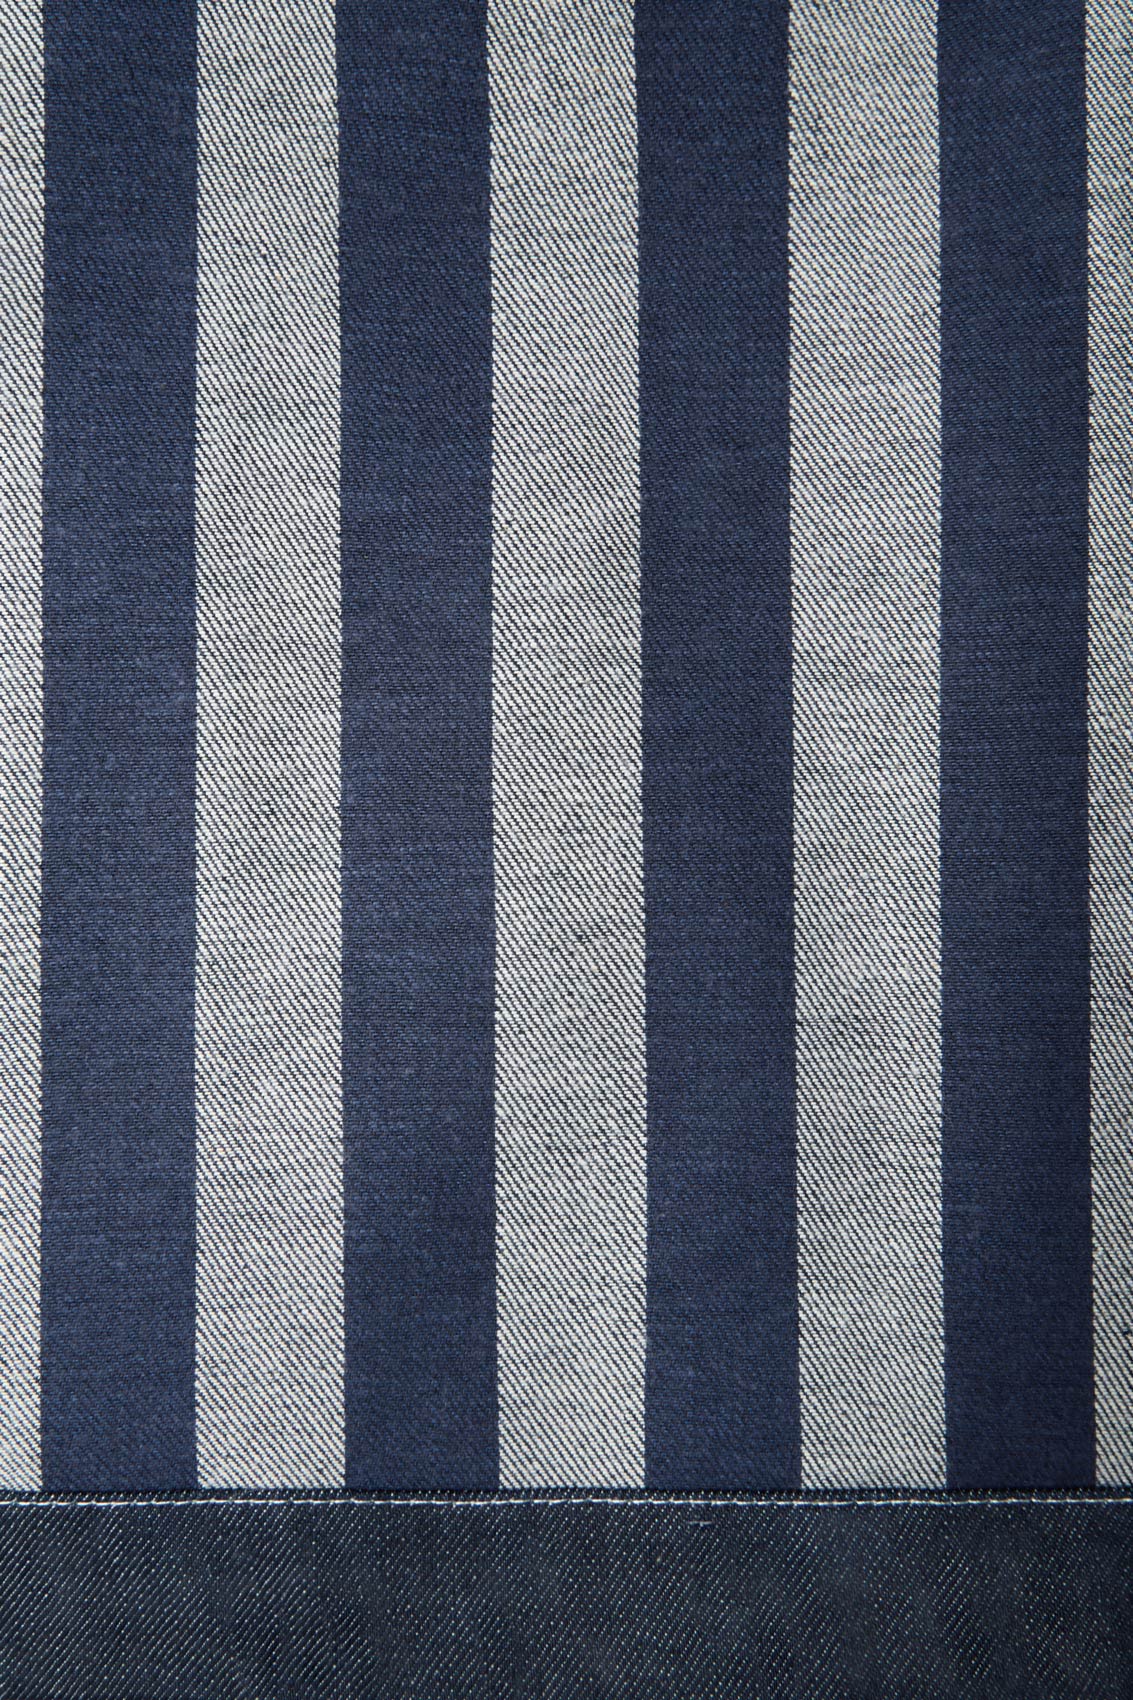 BELLIDENTRO REVERSIBLE SKIRT / denim & electric blue stripes